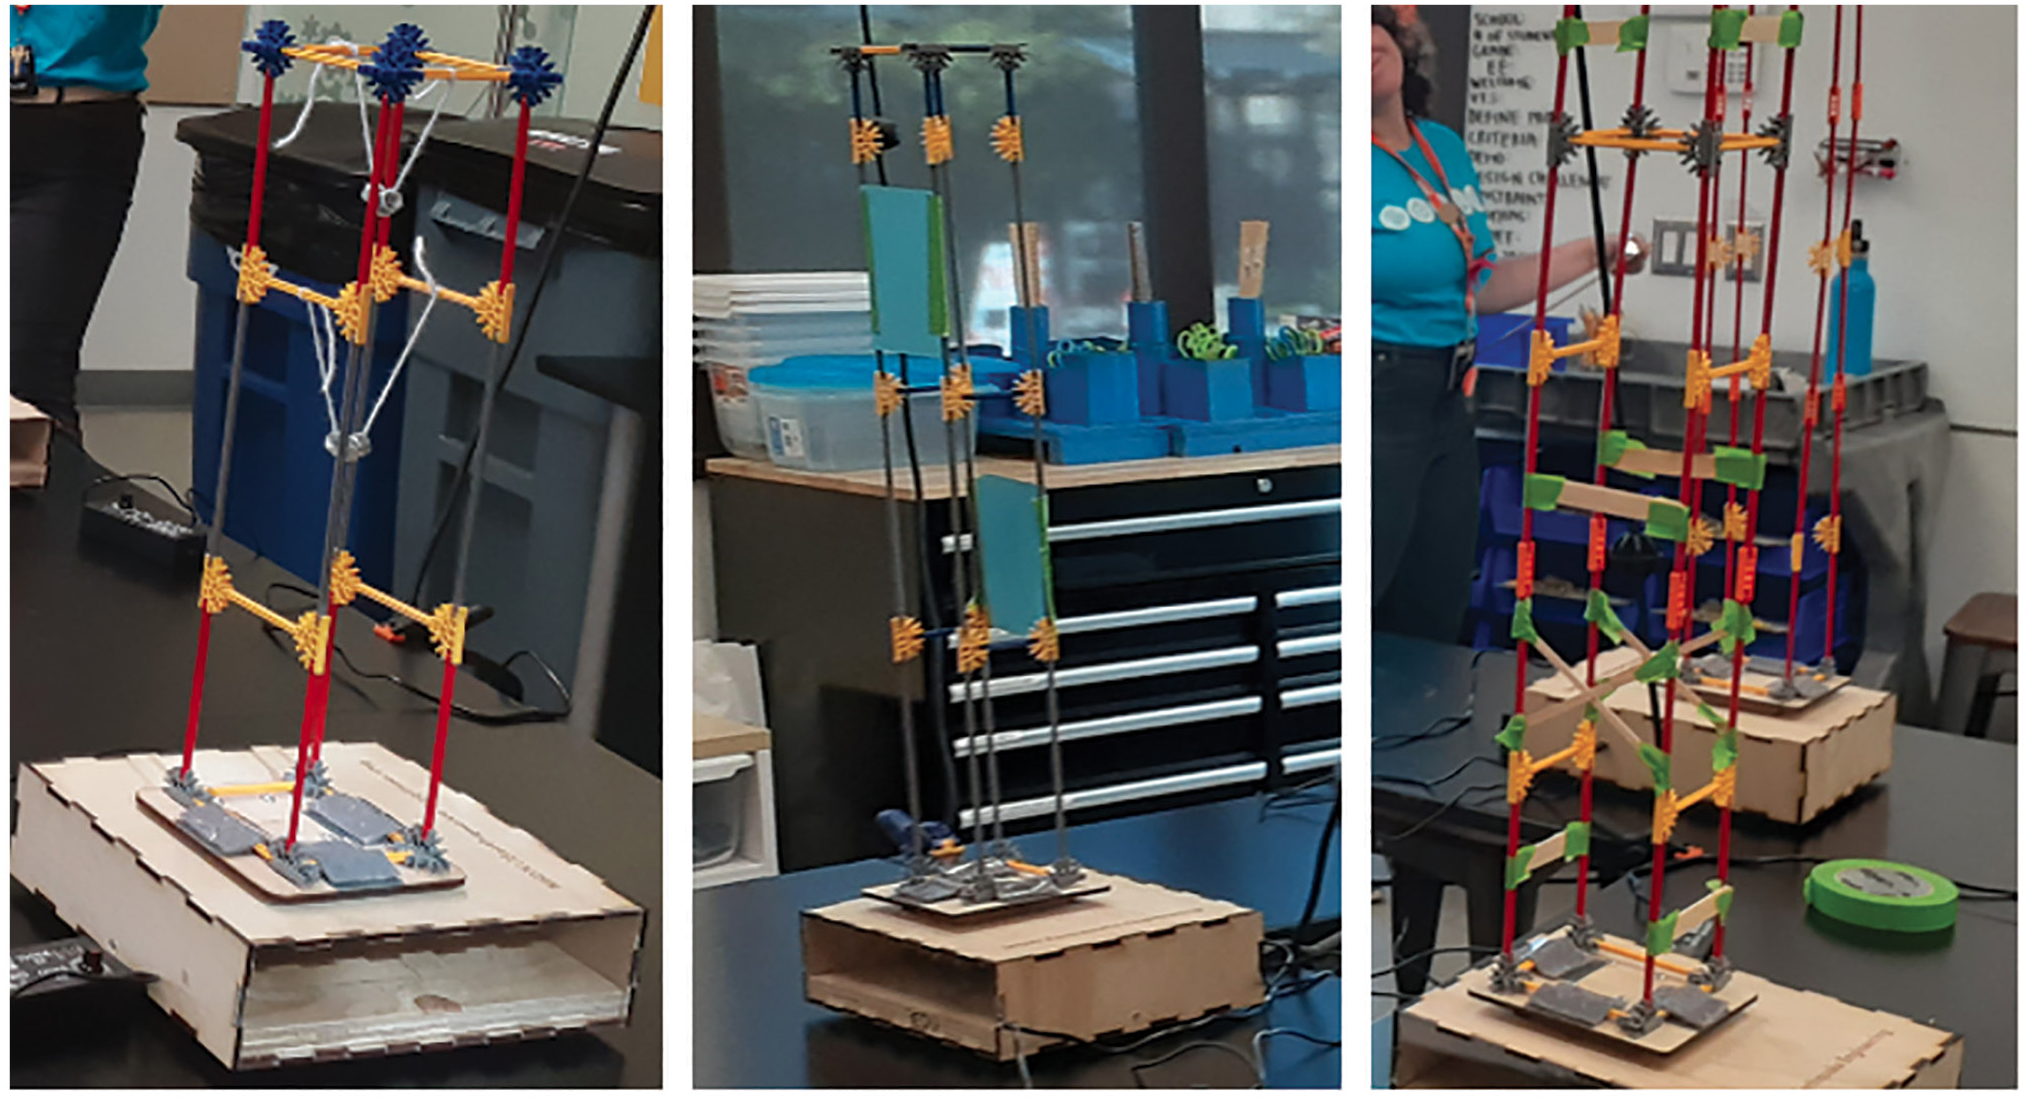 Building demonstration models.